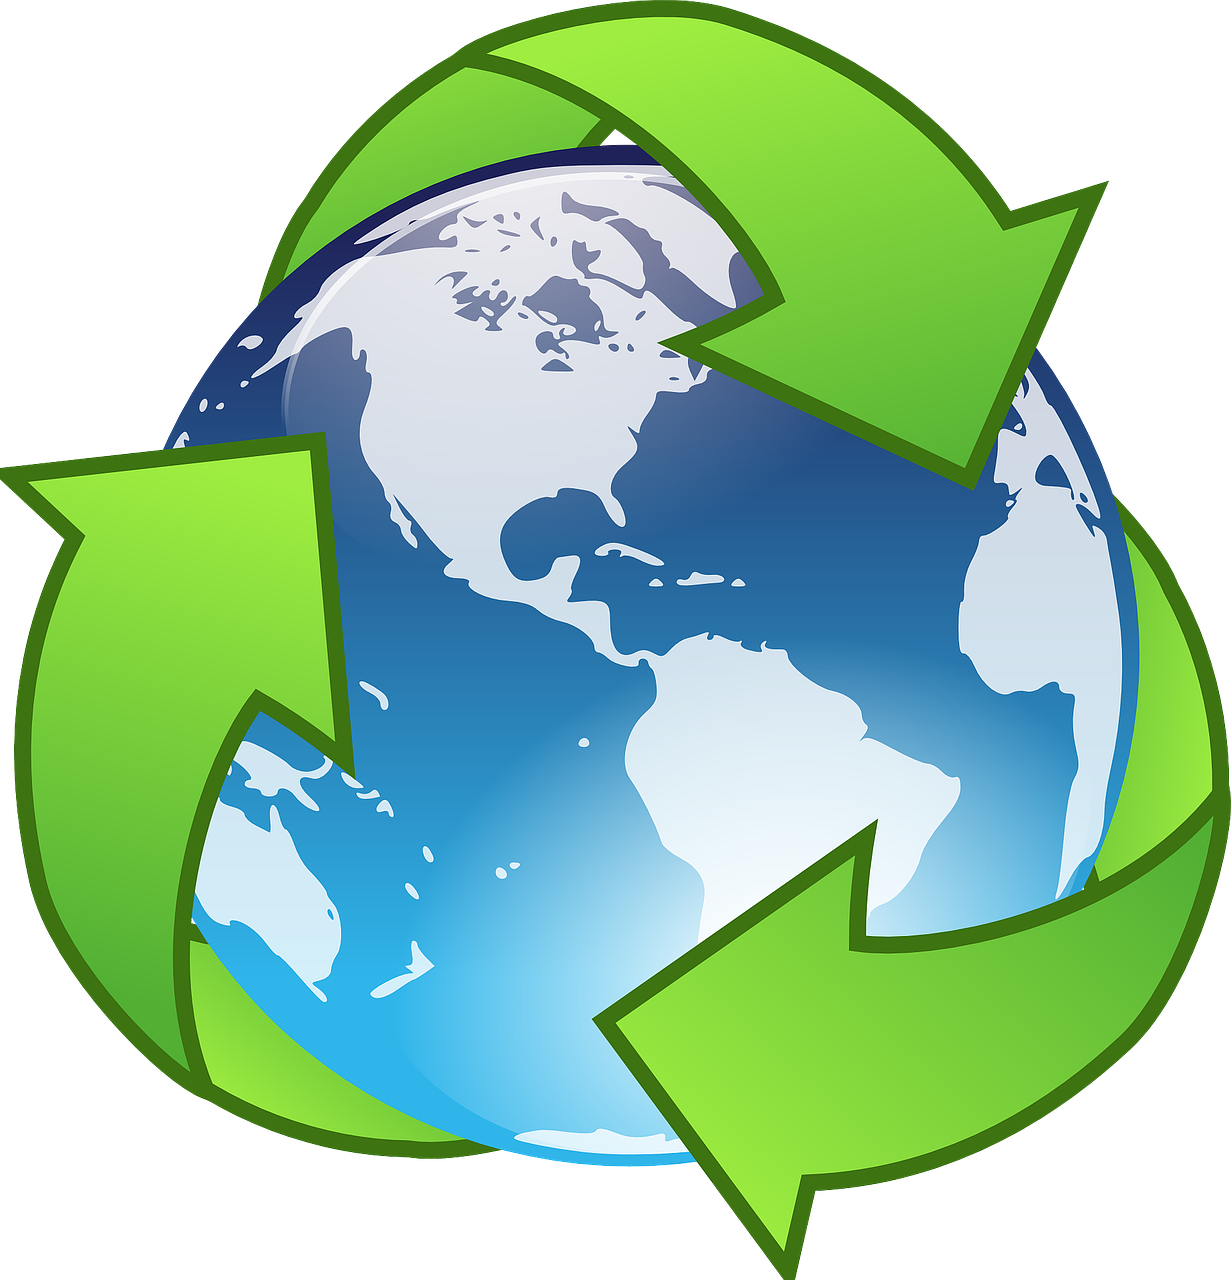 Kreowanie produktów z recyklingu: Jak tworzyć nowe przedmioty z odzyskanych materiałów